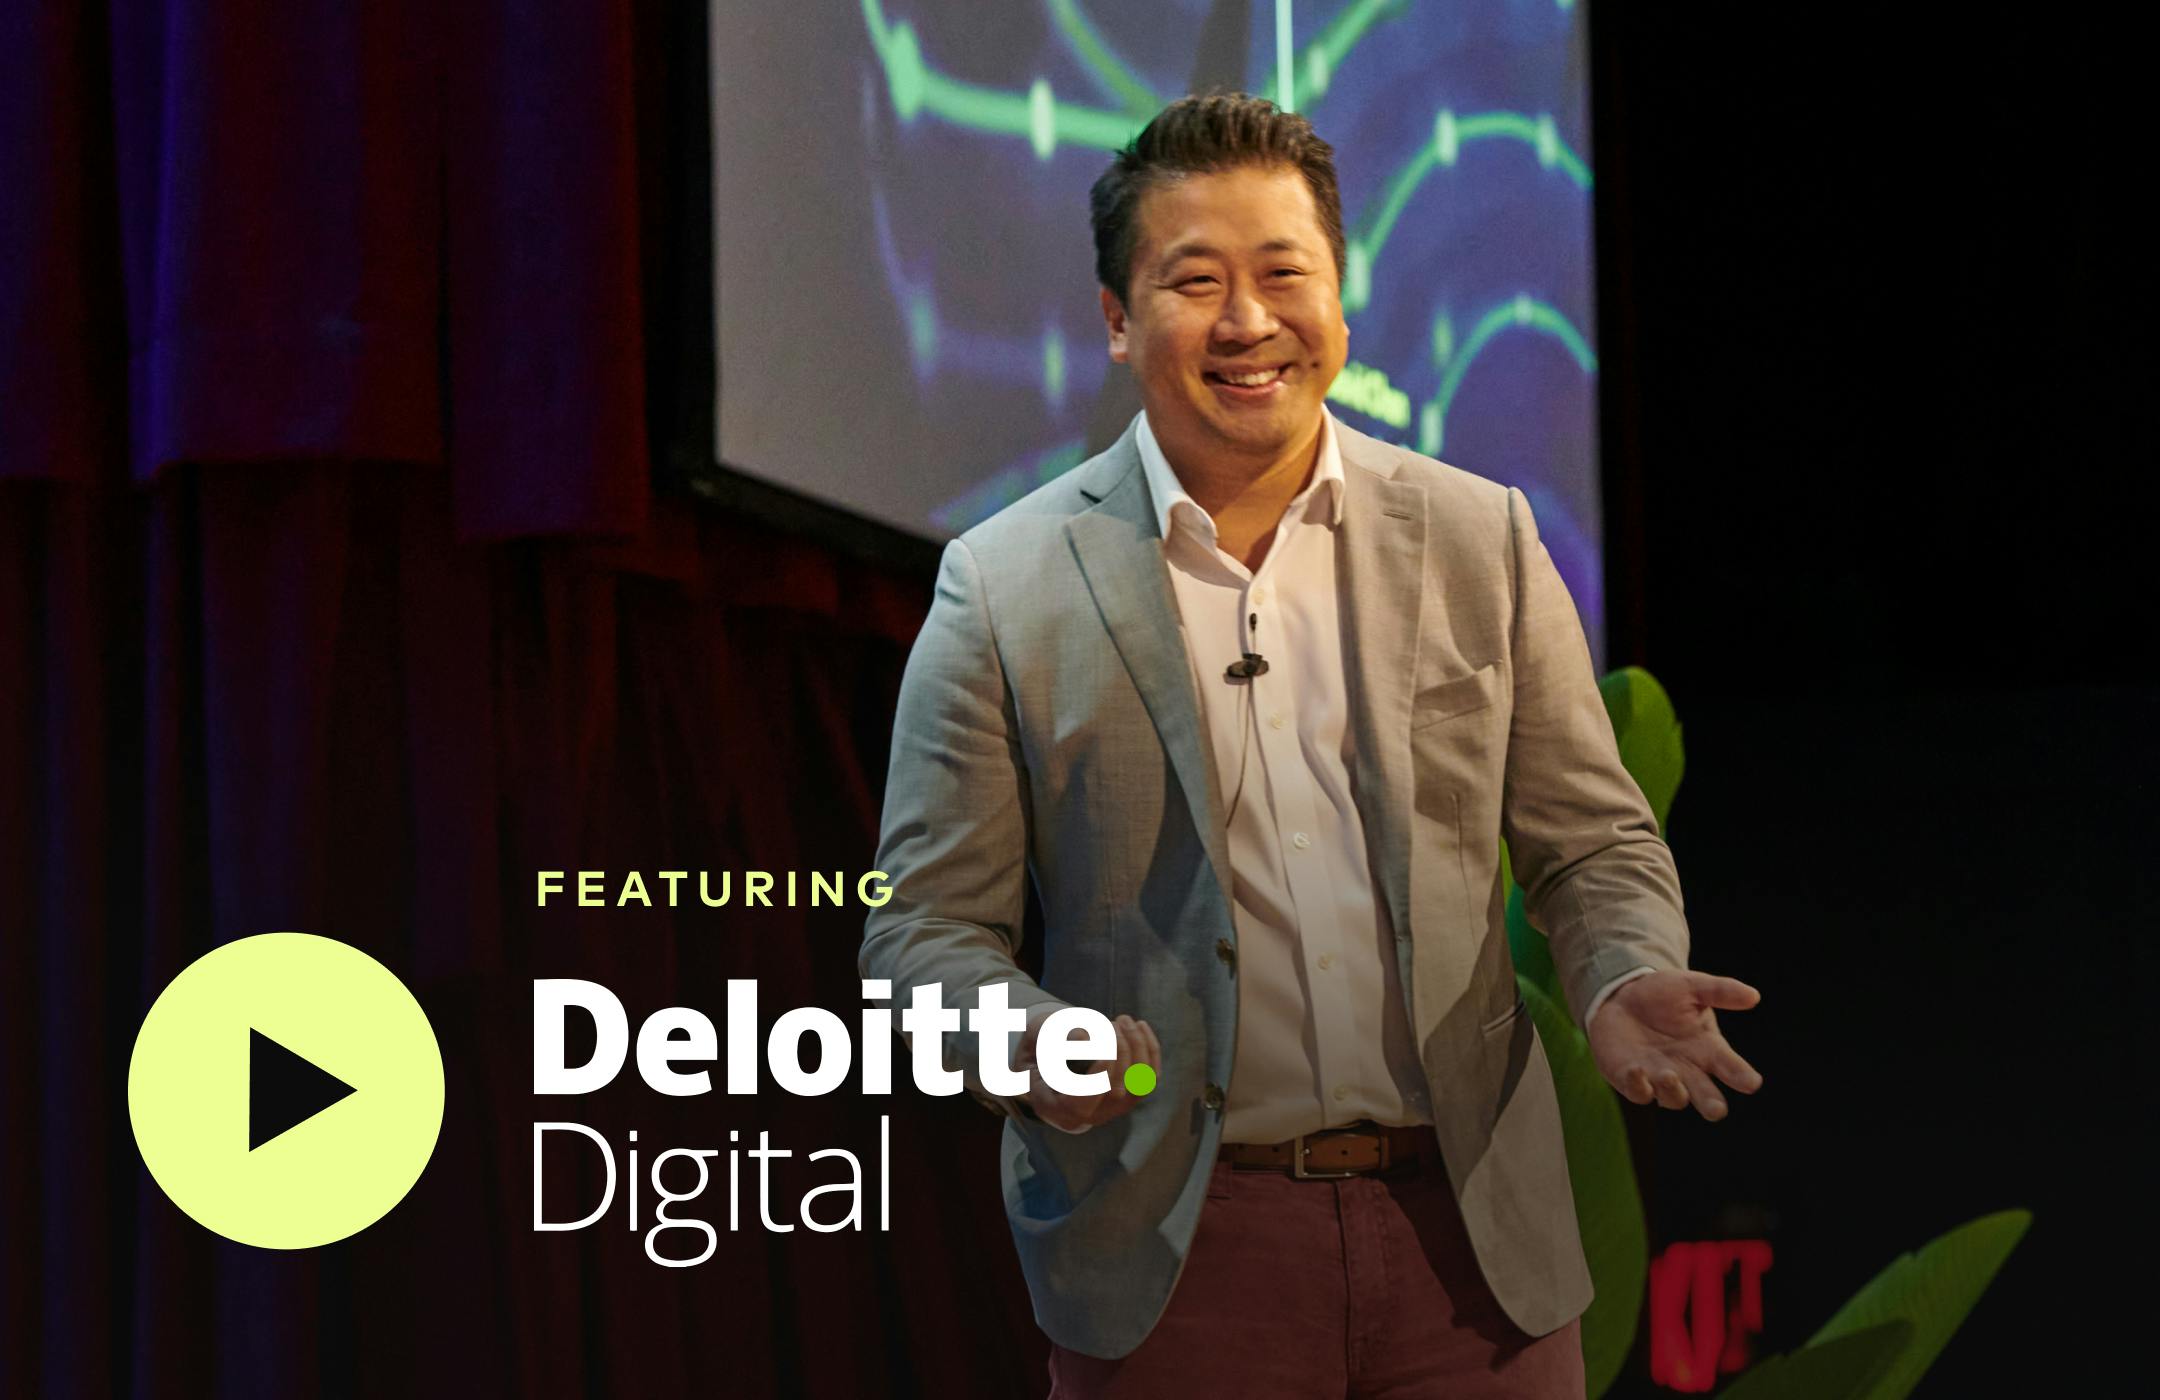 Featuring Deloitte Digital